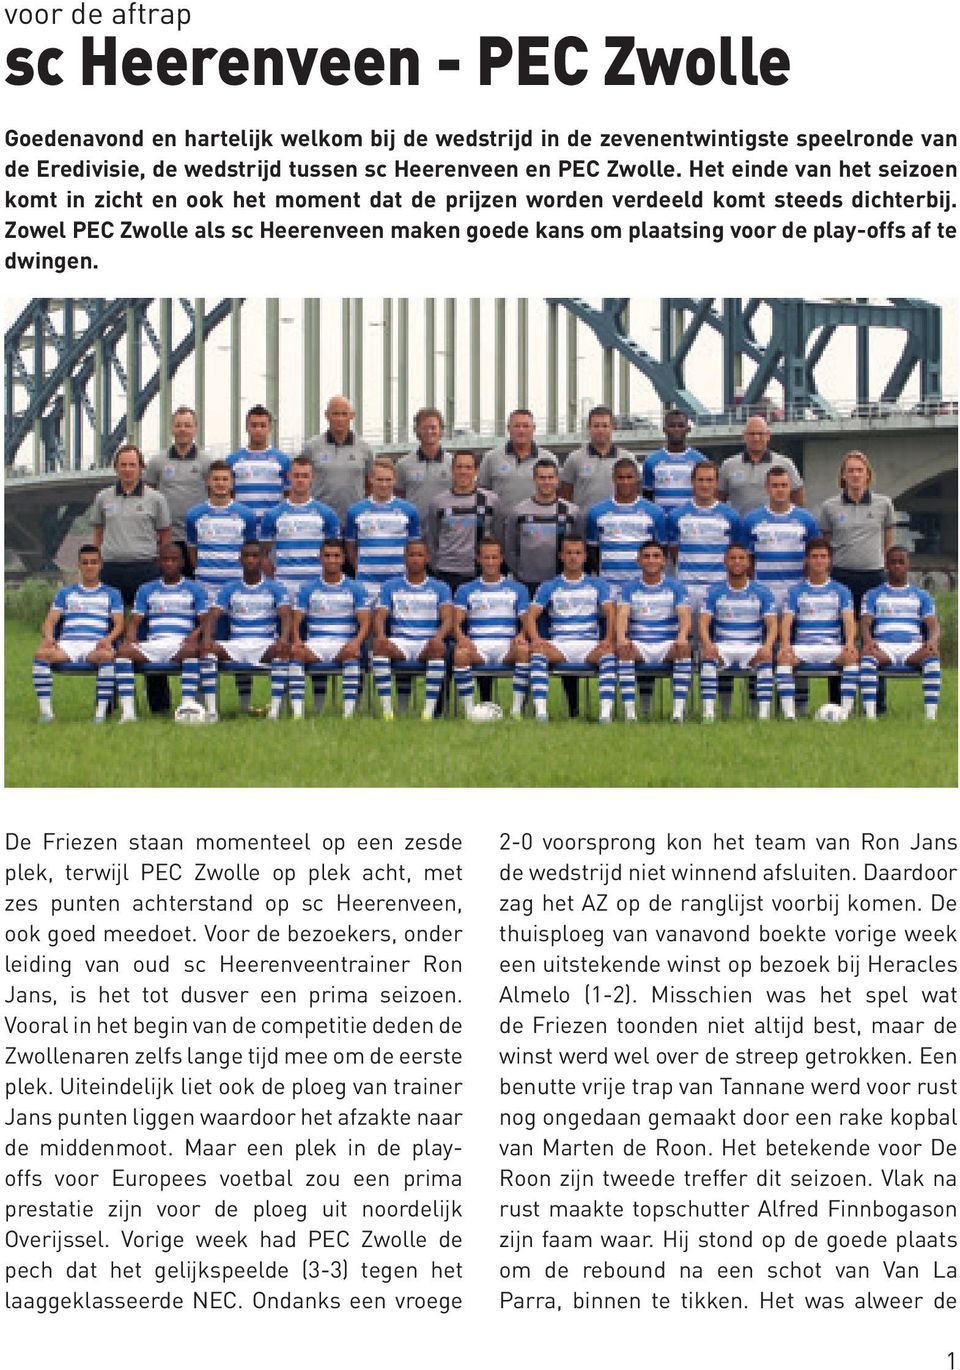 Zowel PEC Zwolle als sc Heerenveen maken goede kans om plaatsing voor de play-offs af te dwingen.